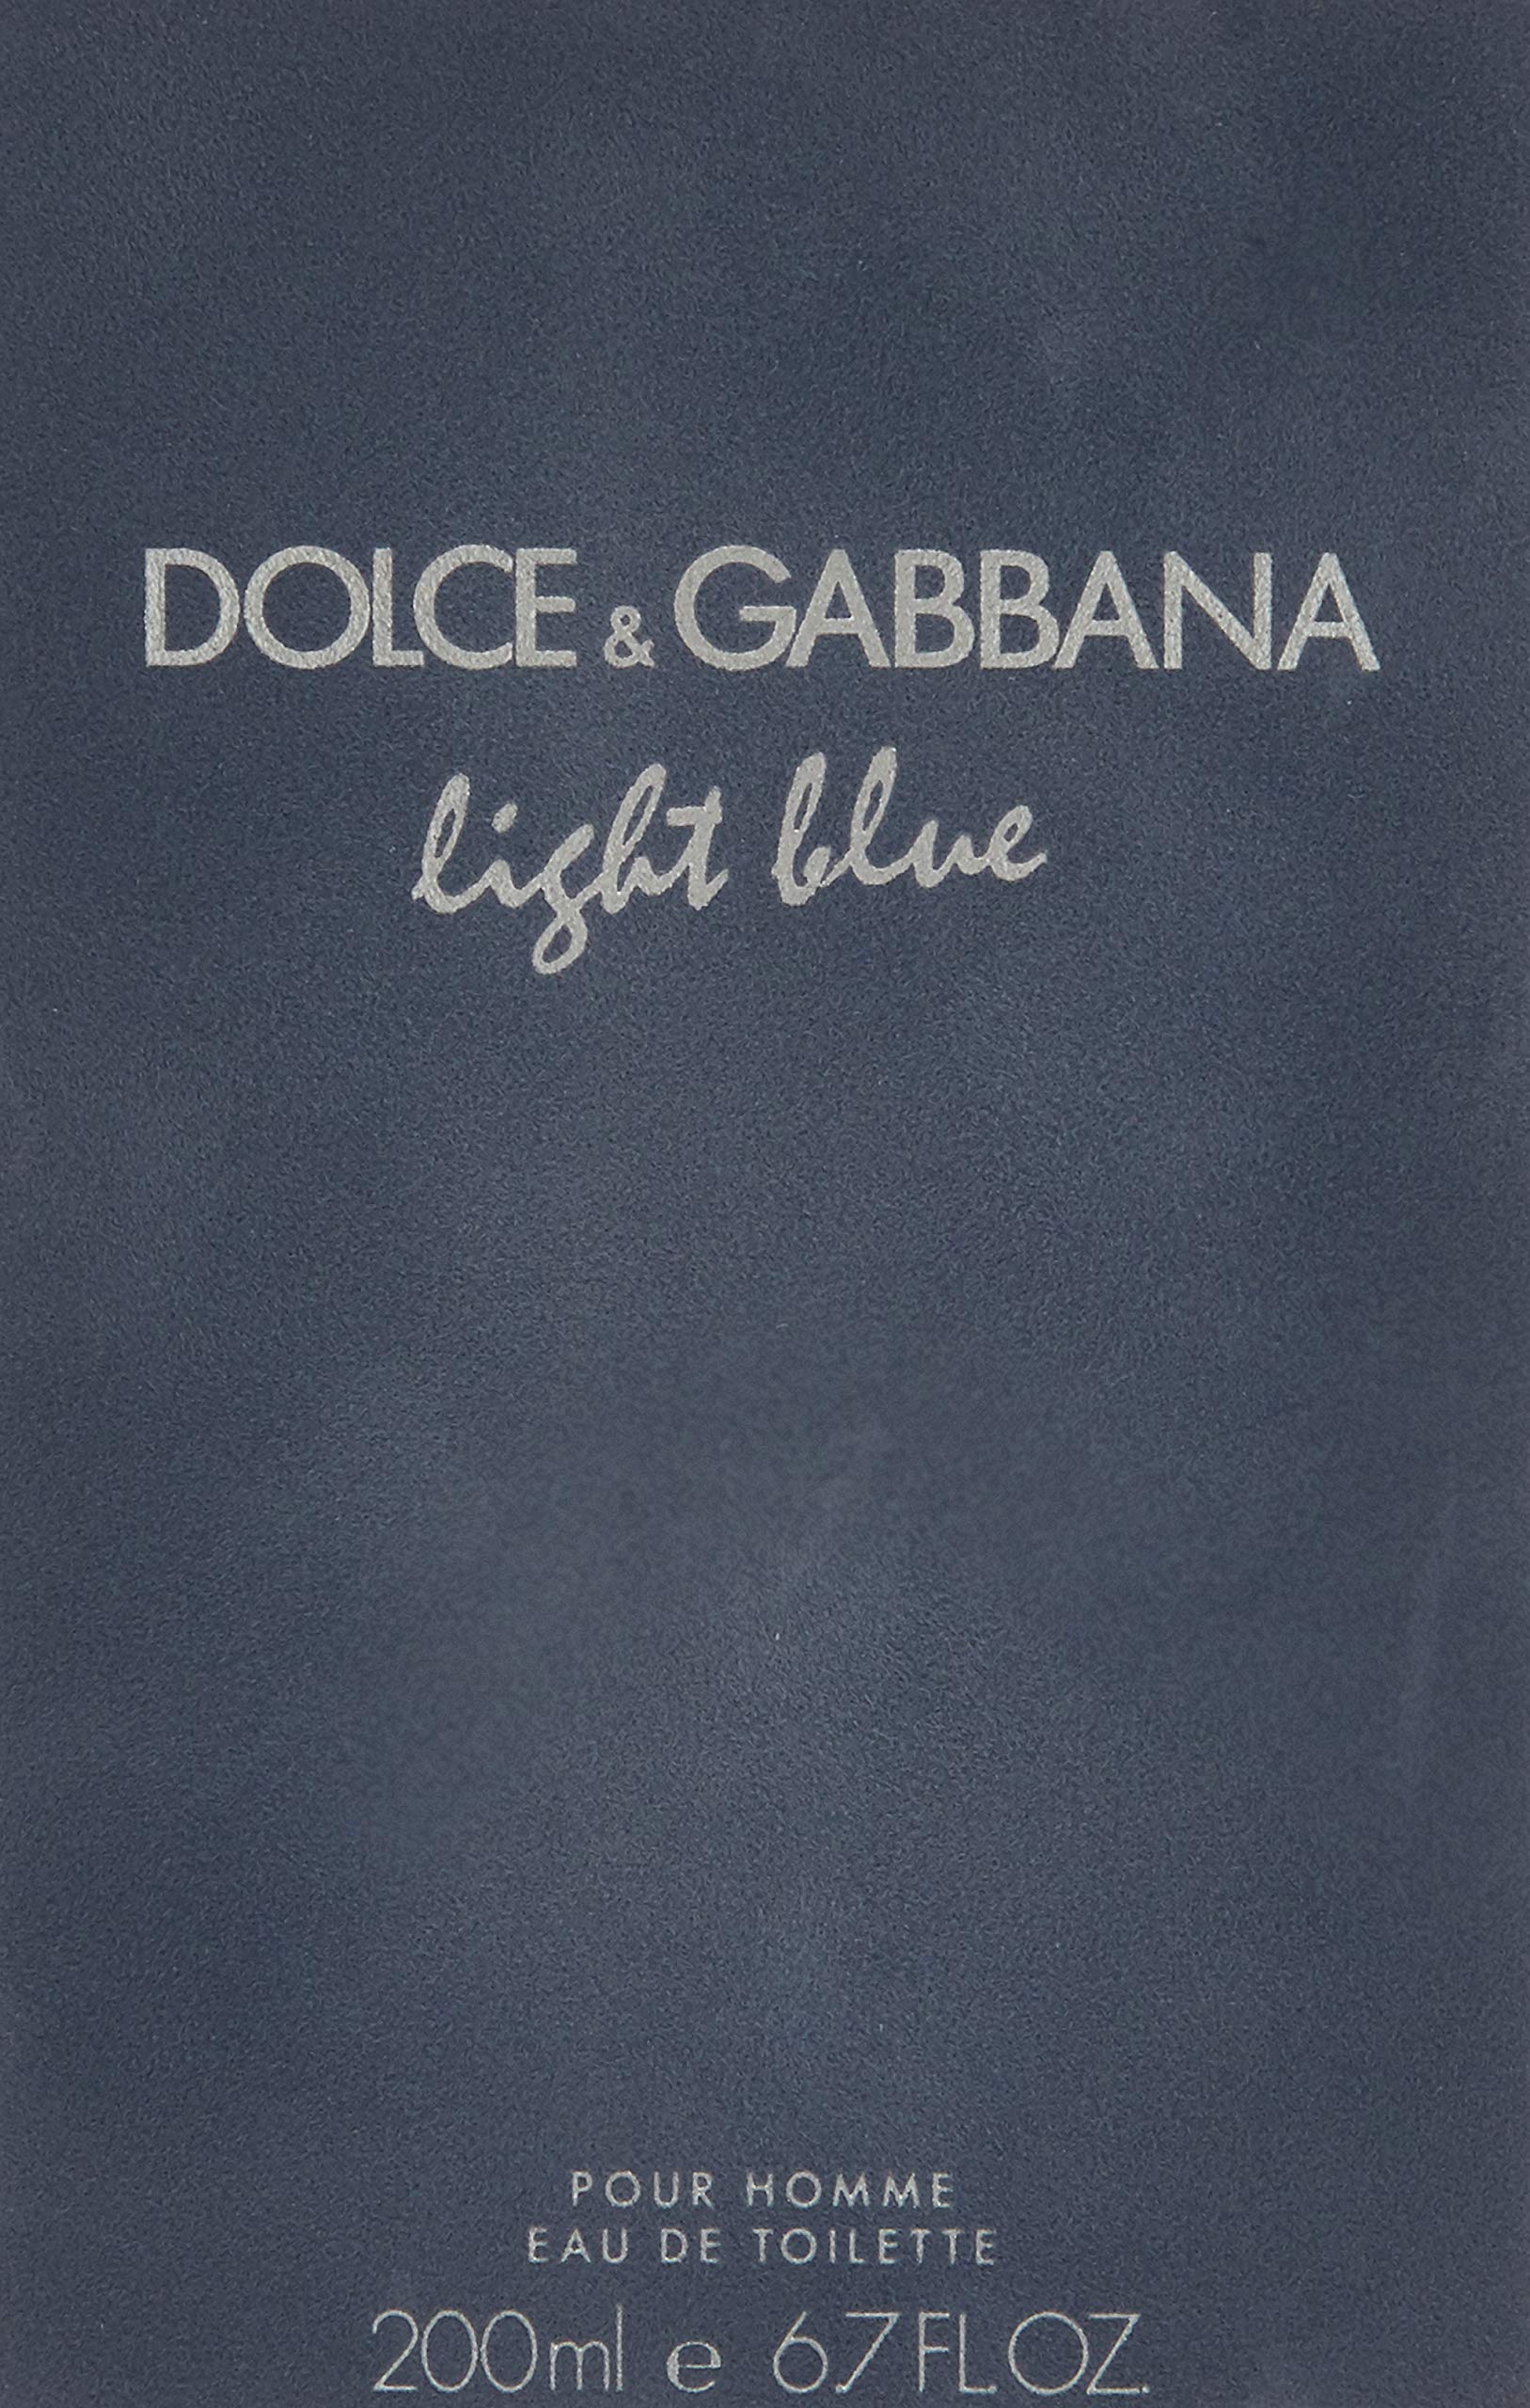 DOLCE&GABBANA Light Blue Pour Homme Eau de Toilette Spray, 6.7 oz.